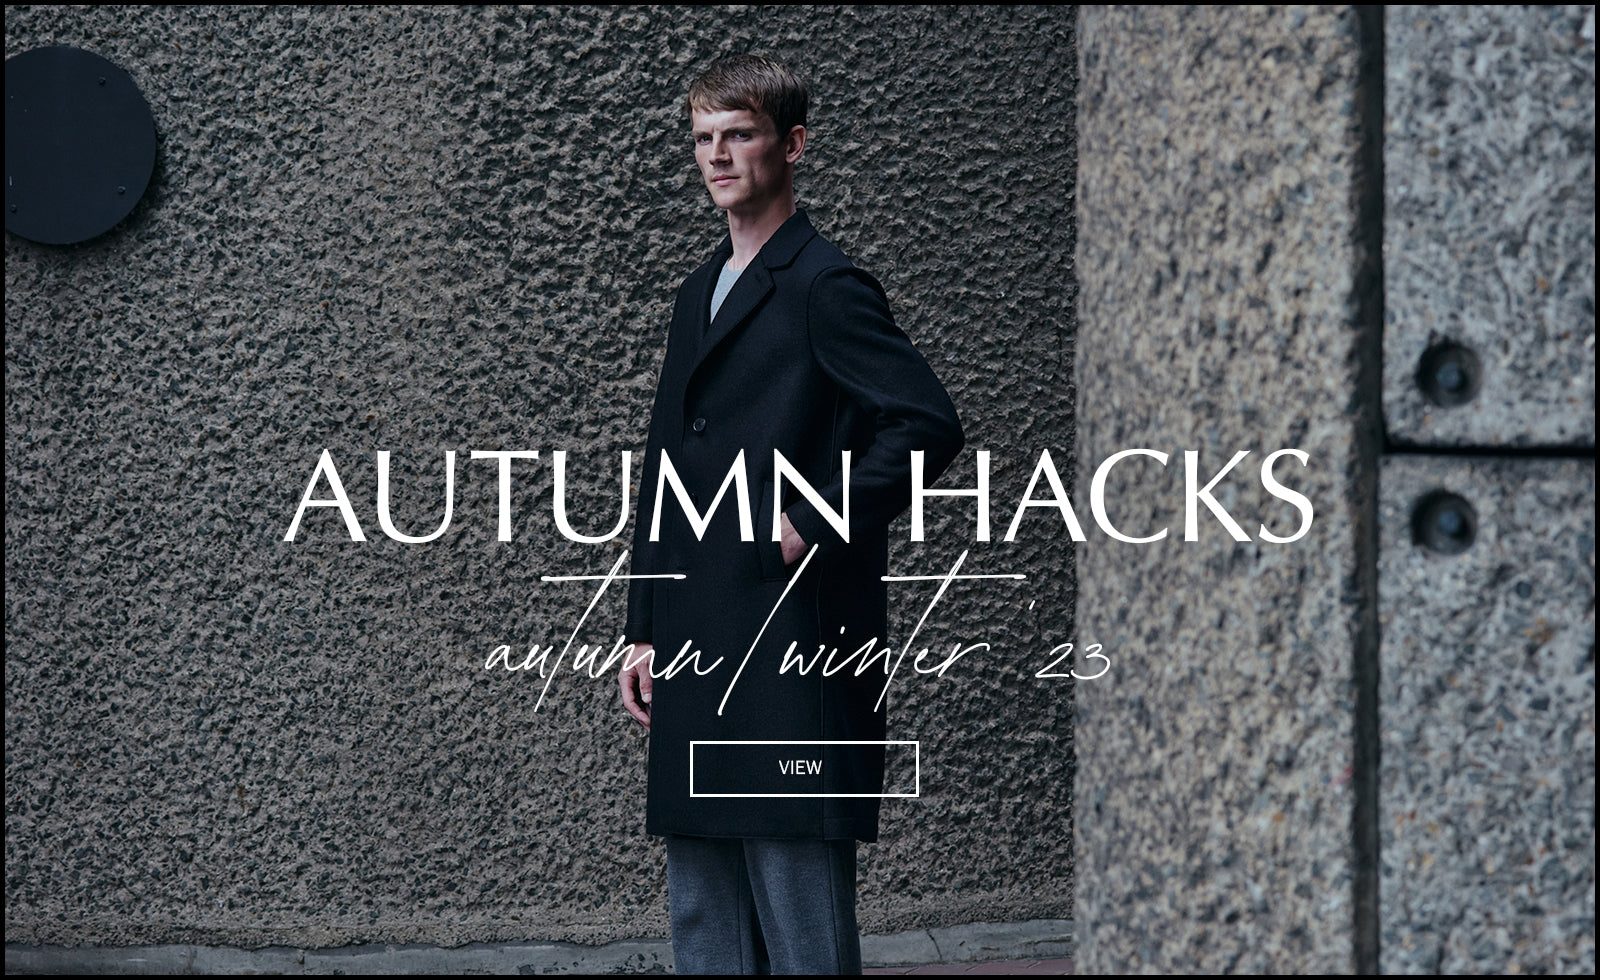 Autumn hacks